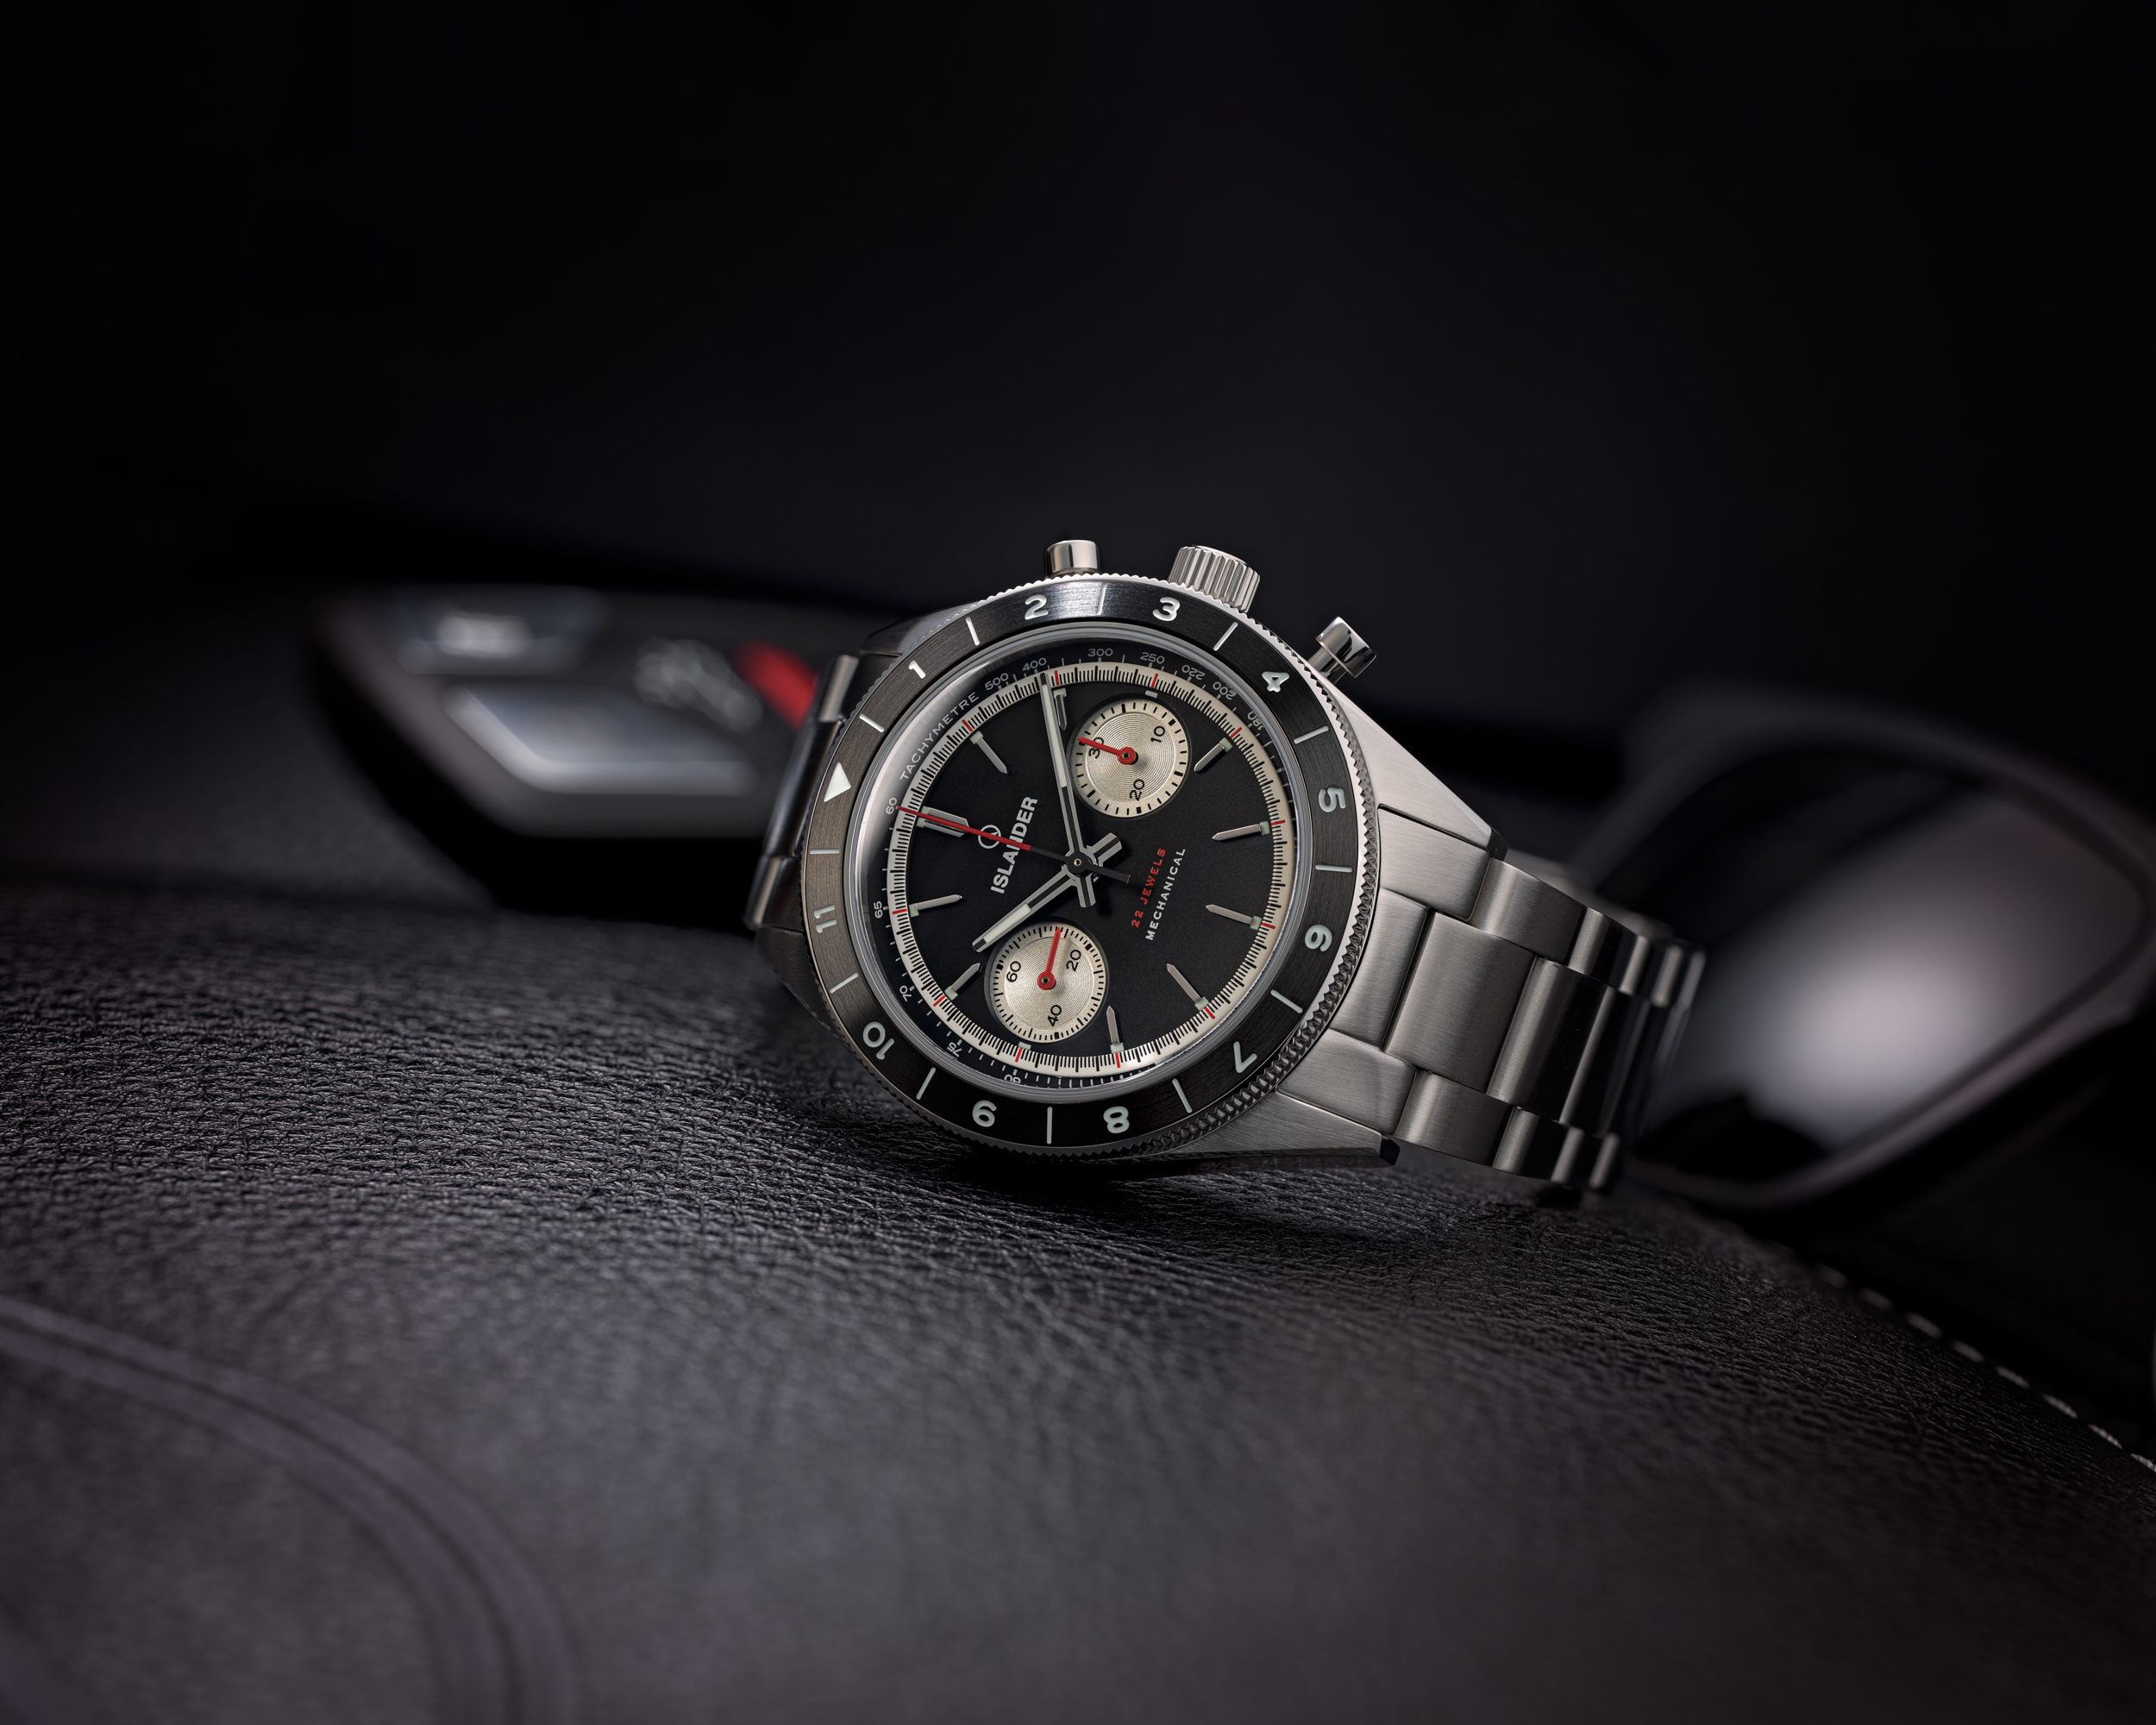 Часы Islander Bridgehampton Racing Chronograph - это механическая мечта стоимостью до 500 долларов